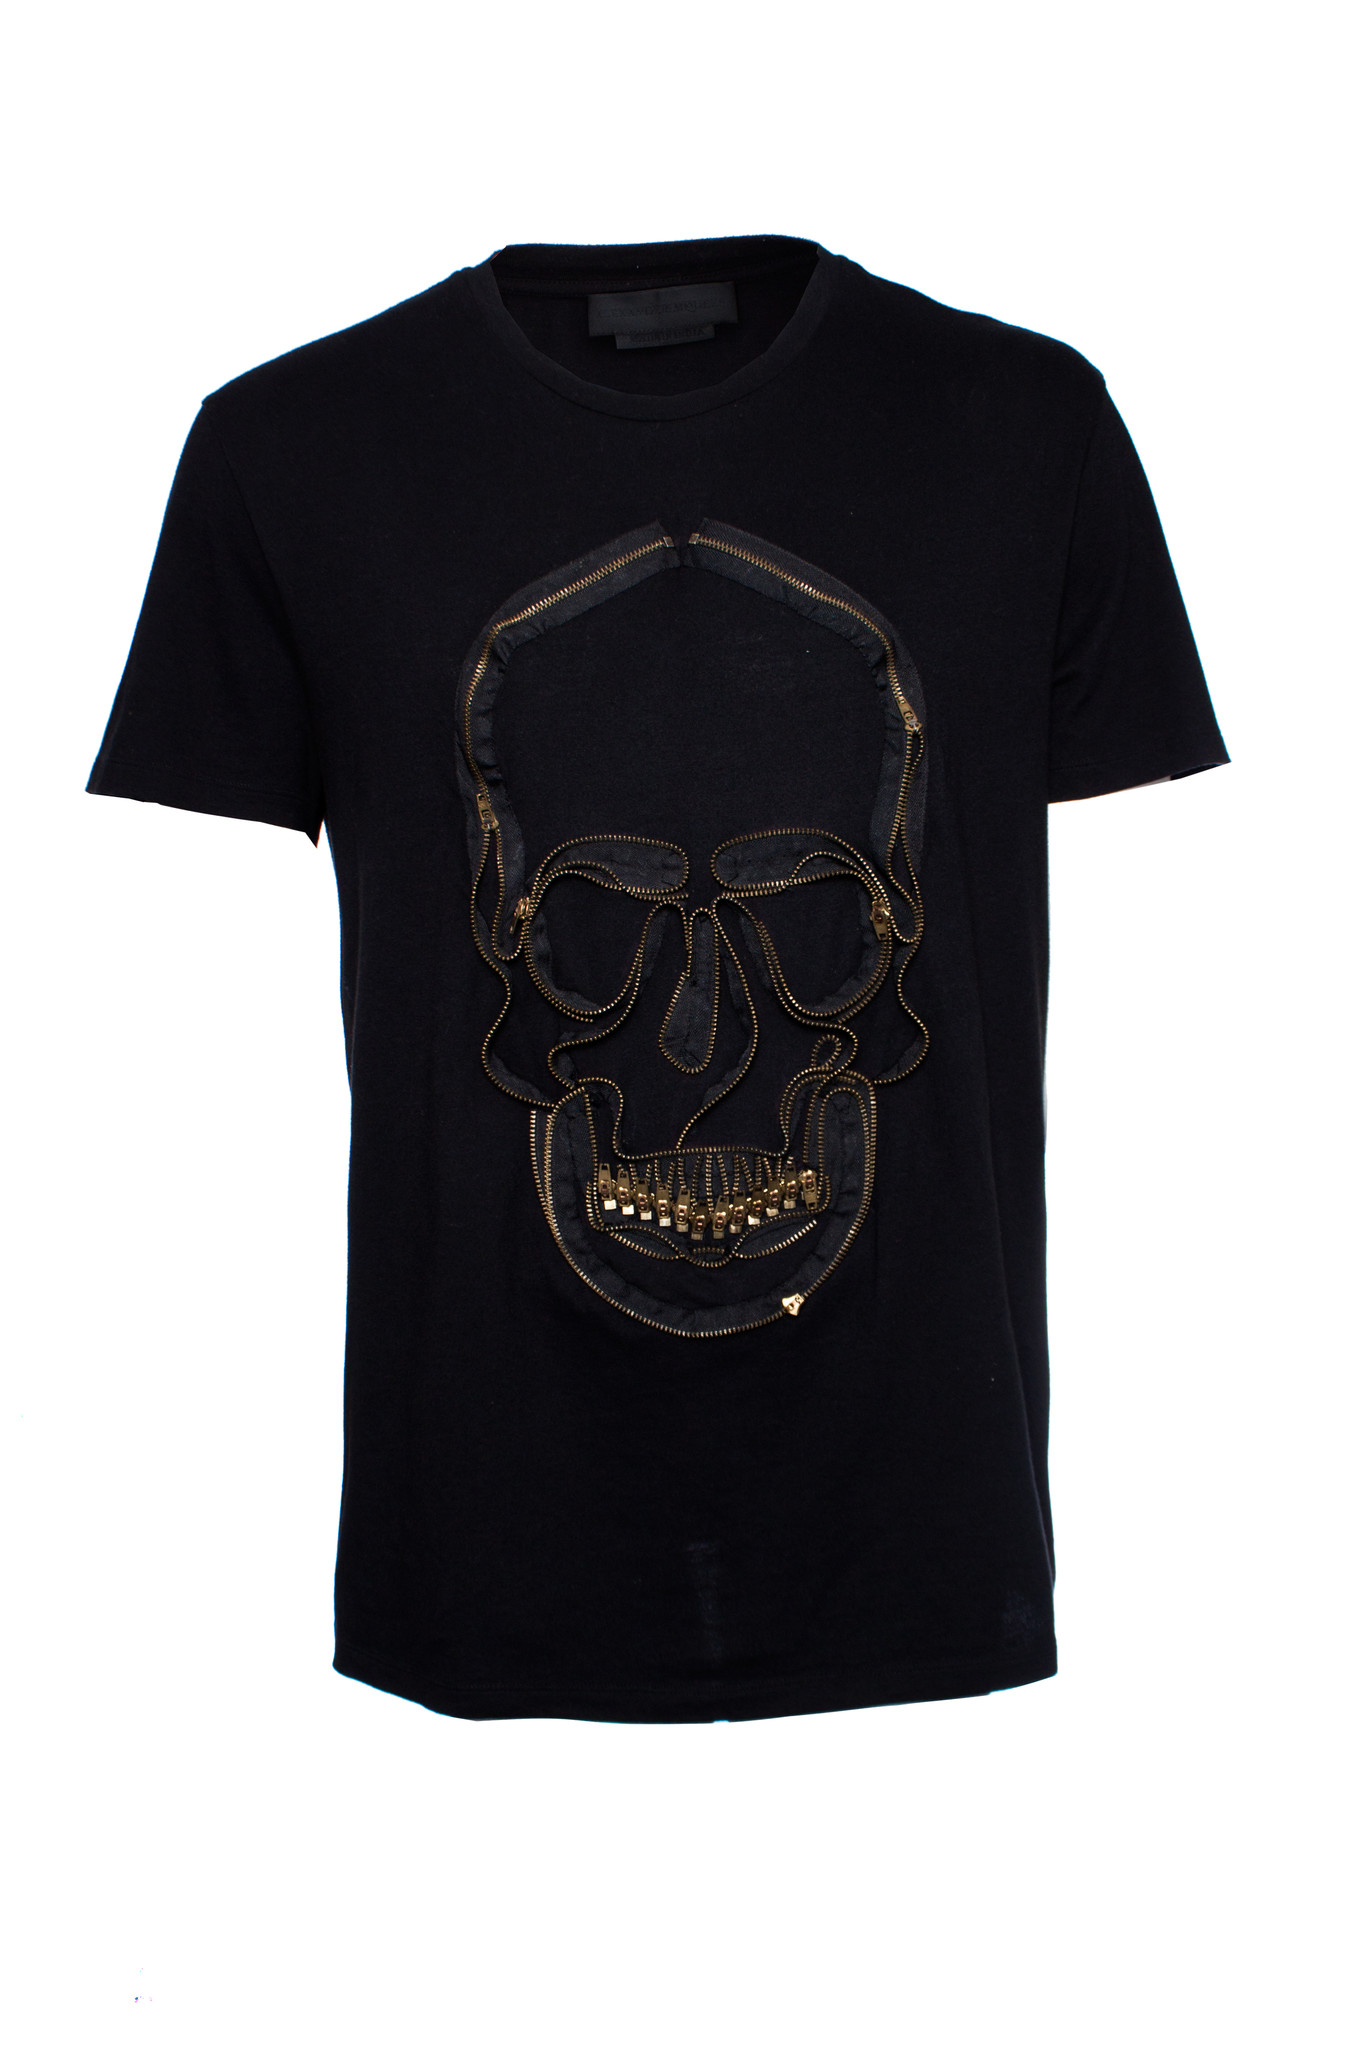 Alexander McQueen, Zip skull jersey T-shirt in size XL. - Unique ...